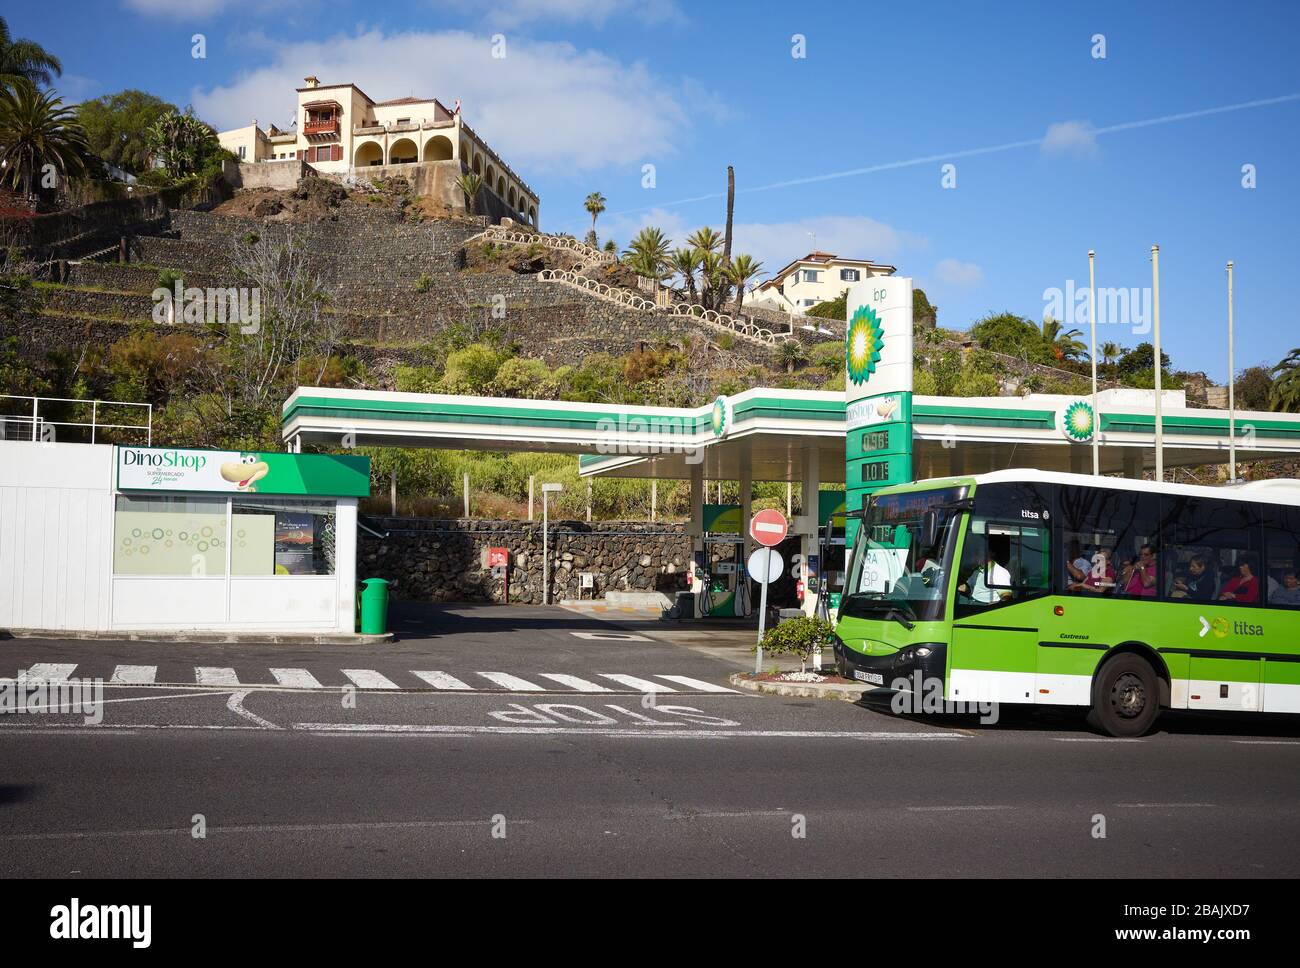 Puerto de la Cruz, Tenerife, Spagna - 29 marzo 2019: Autobus che passa per la stazione di servizio BP a Botanico Road. Foto Stock